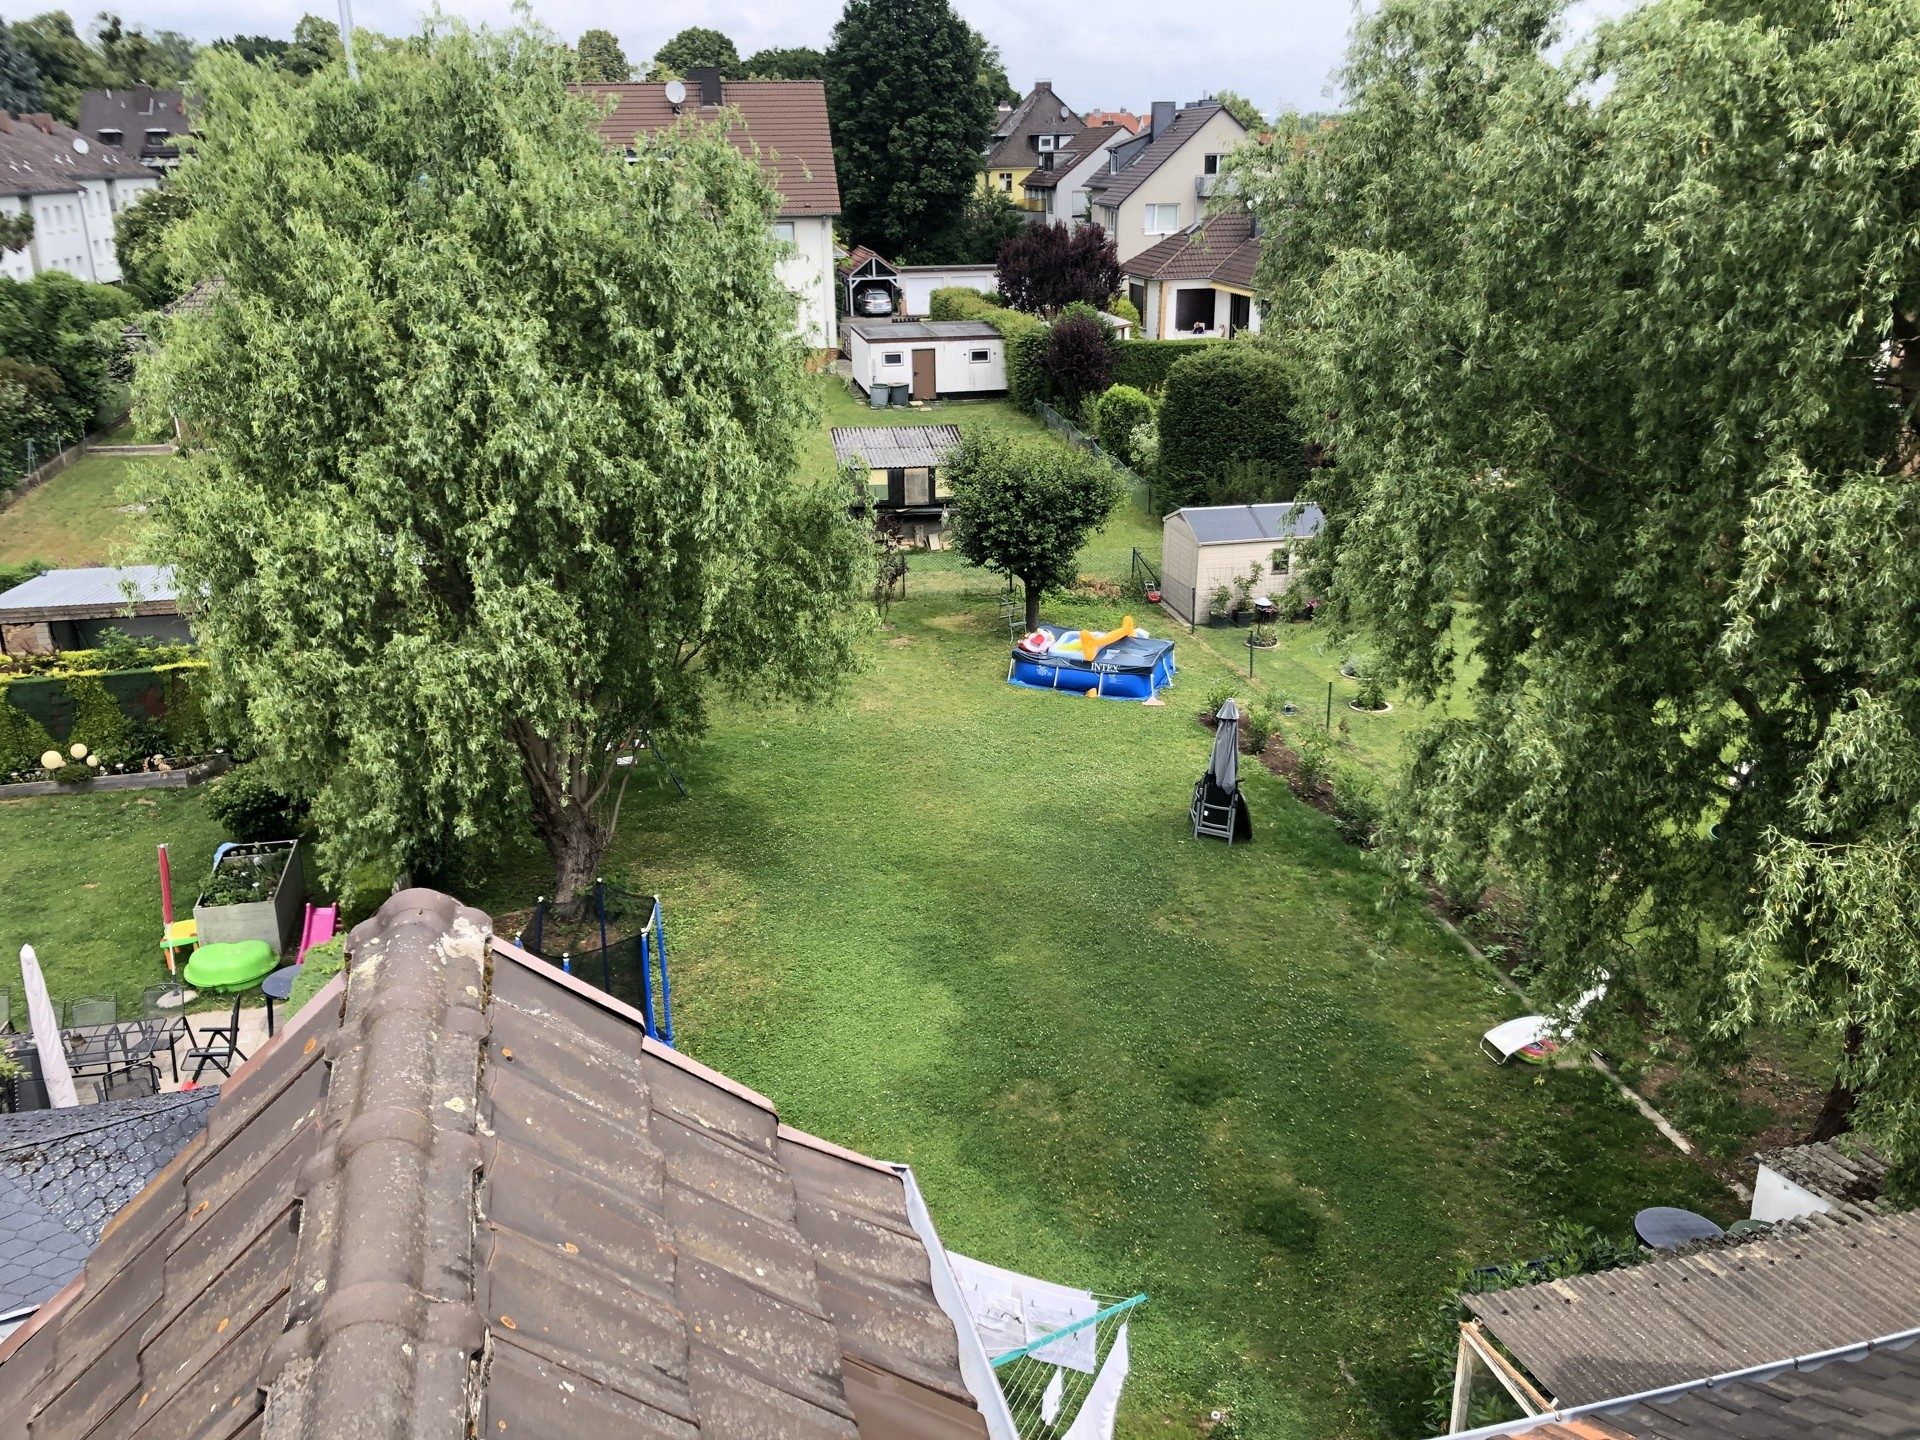 Immobilienangebot - Kassel - Alle - Singlehaushalte aufgepasst! 1-ZKB DG-Wohnung mit Garten in bester Lage von KS-Niederzwehren!